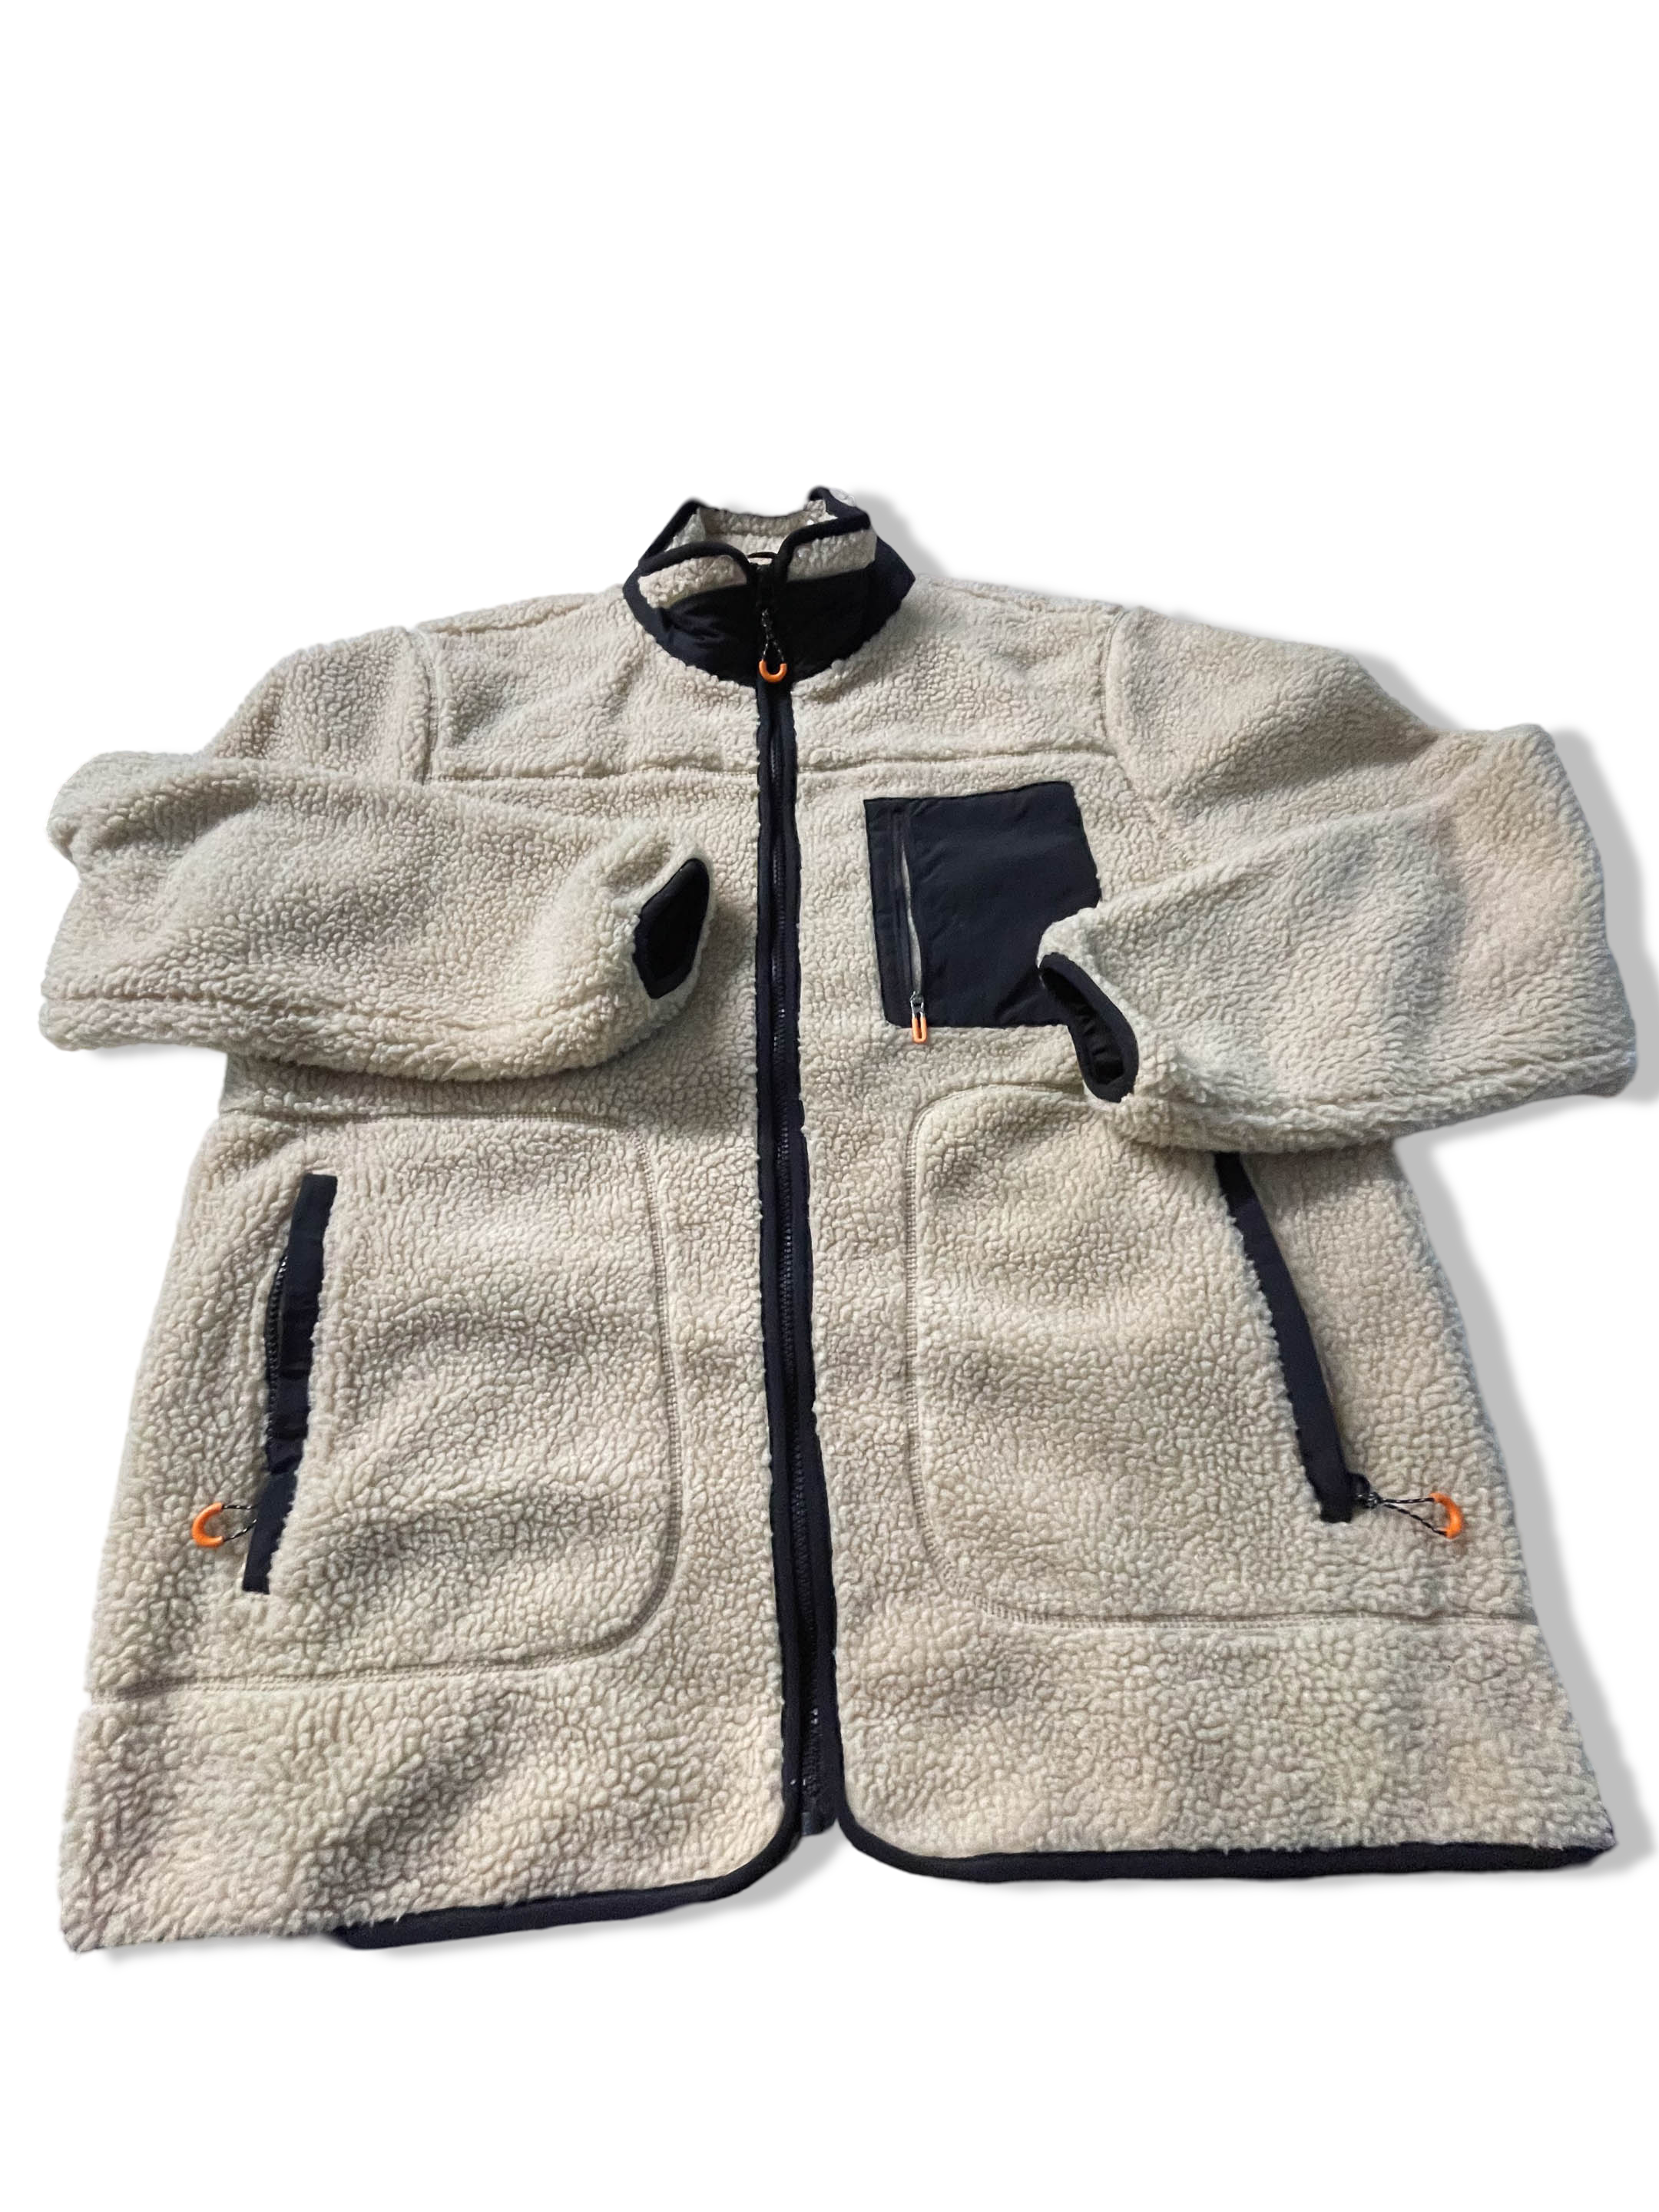 Vintage Men's Cream fleece full zip jacket in XL| L32 W24| SKU 3842